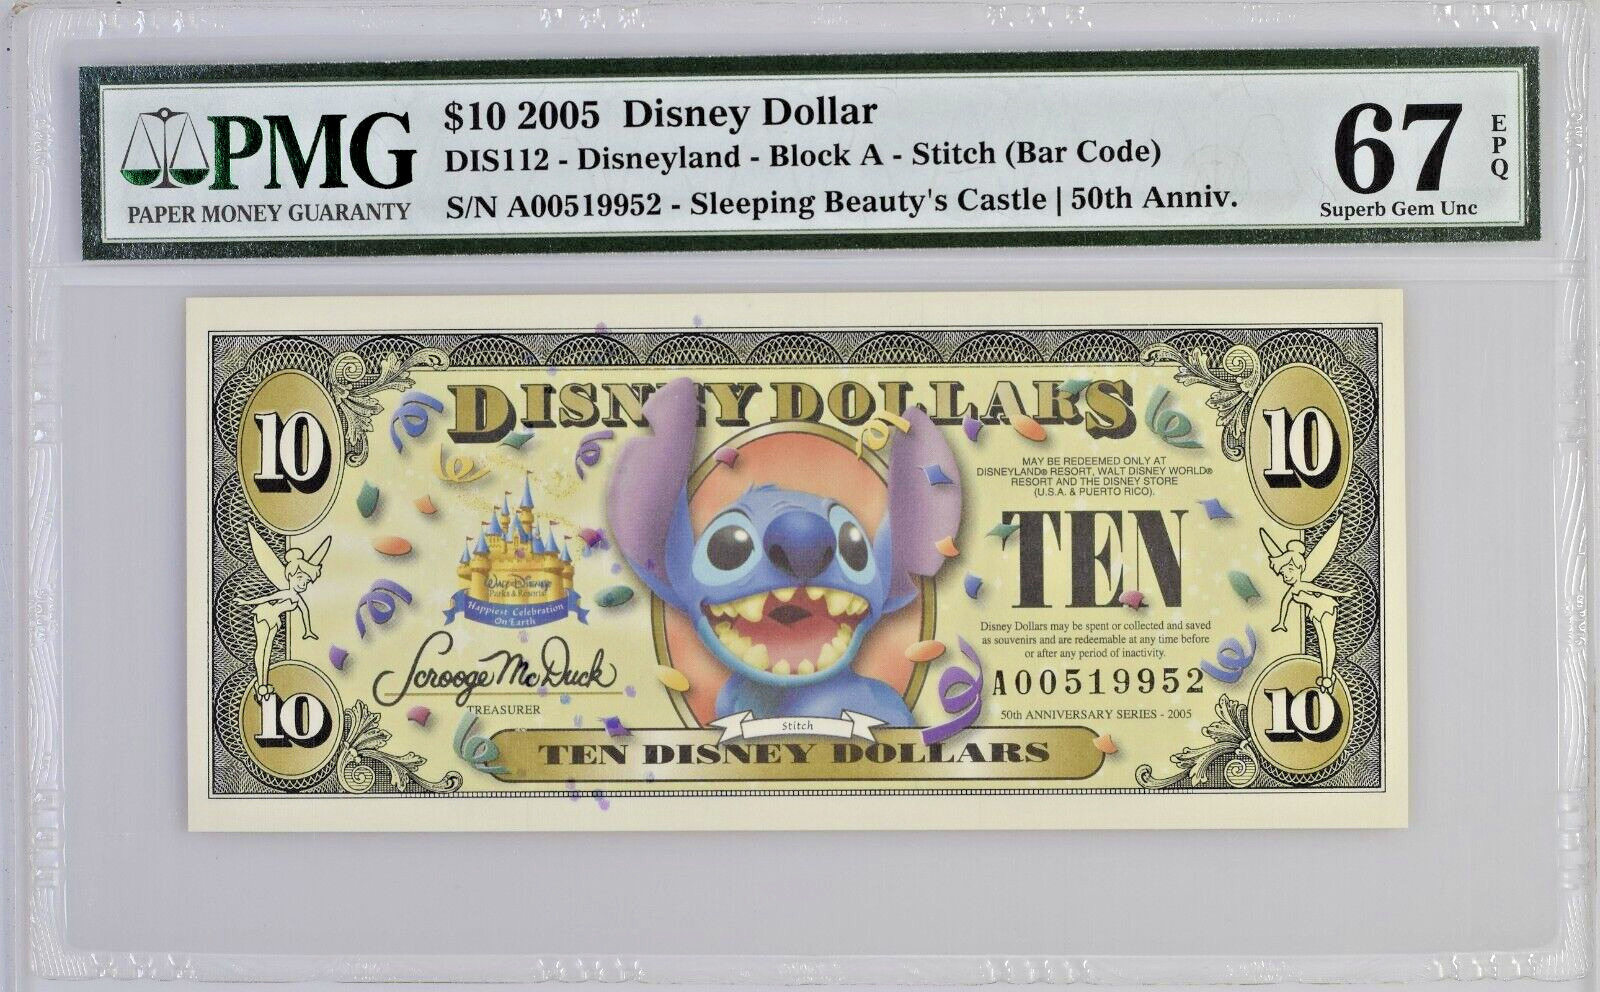 2005 Disney Dollar $10 Disneyland Block A Stitch (Bar Code) PMG 67